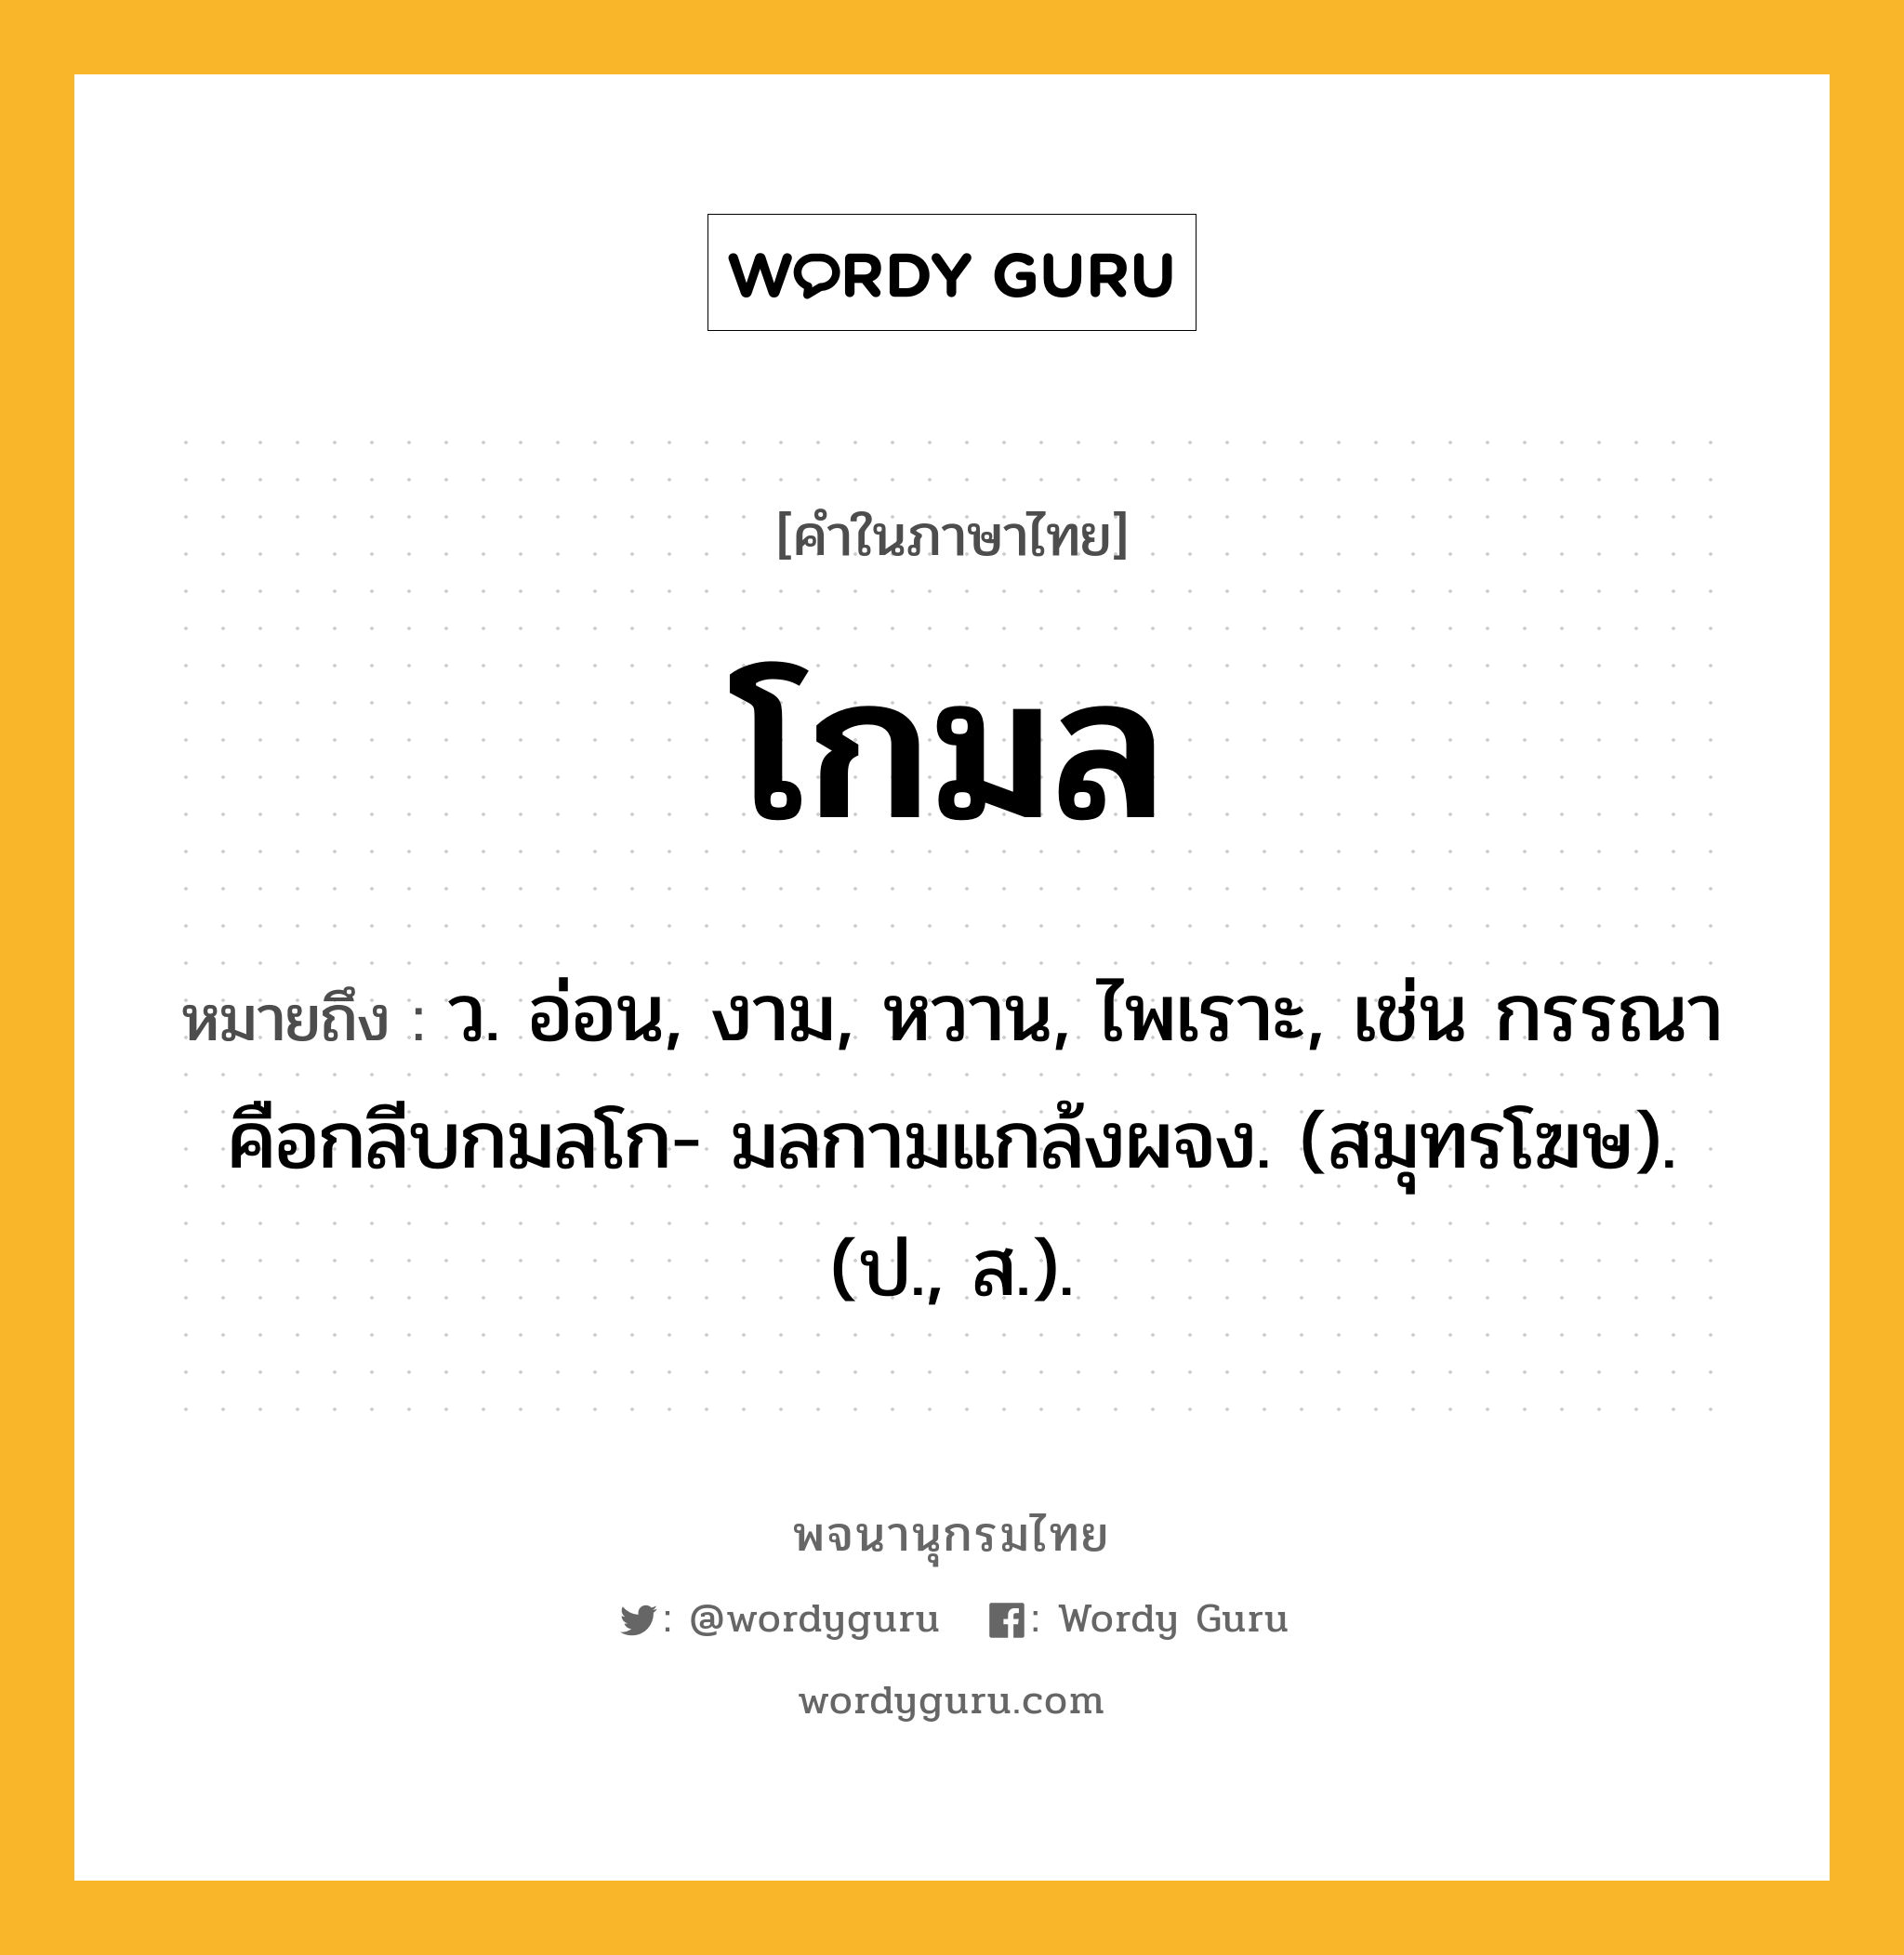 โกมล ความหมาย หมายถึงอะไร?, คำในภาษาไทย โกมล หมายถึง ว. อ่อน, งาม, หวาน, ไพเราะ, เช่น กรรณาคือกลีบกมลโก- มลกามแกล้งผจง. (สมุทรโฆษ). (ป., ส.).